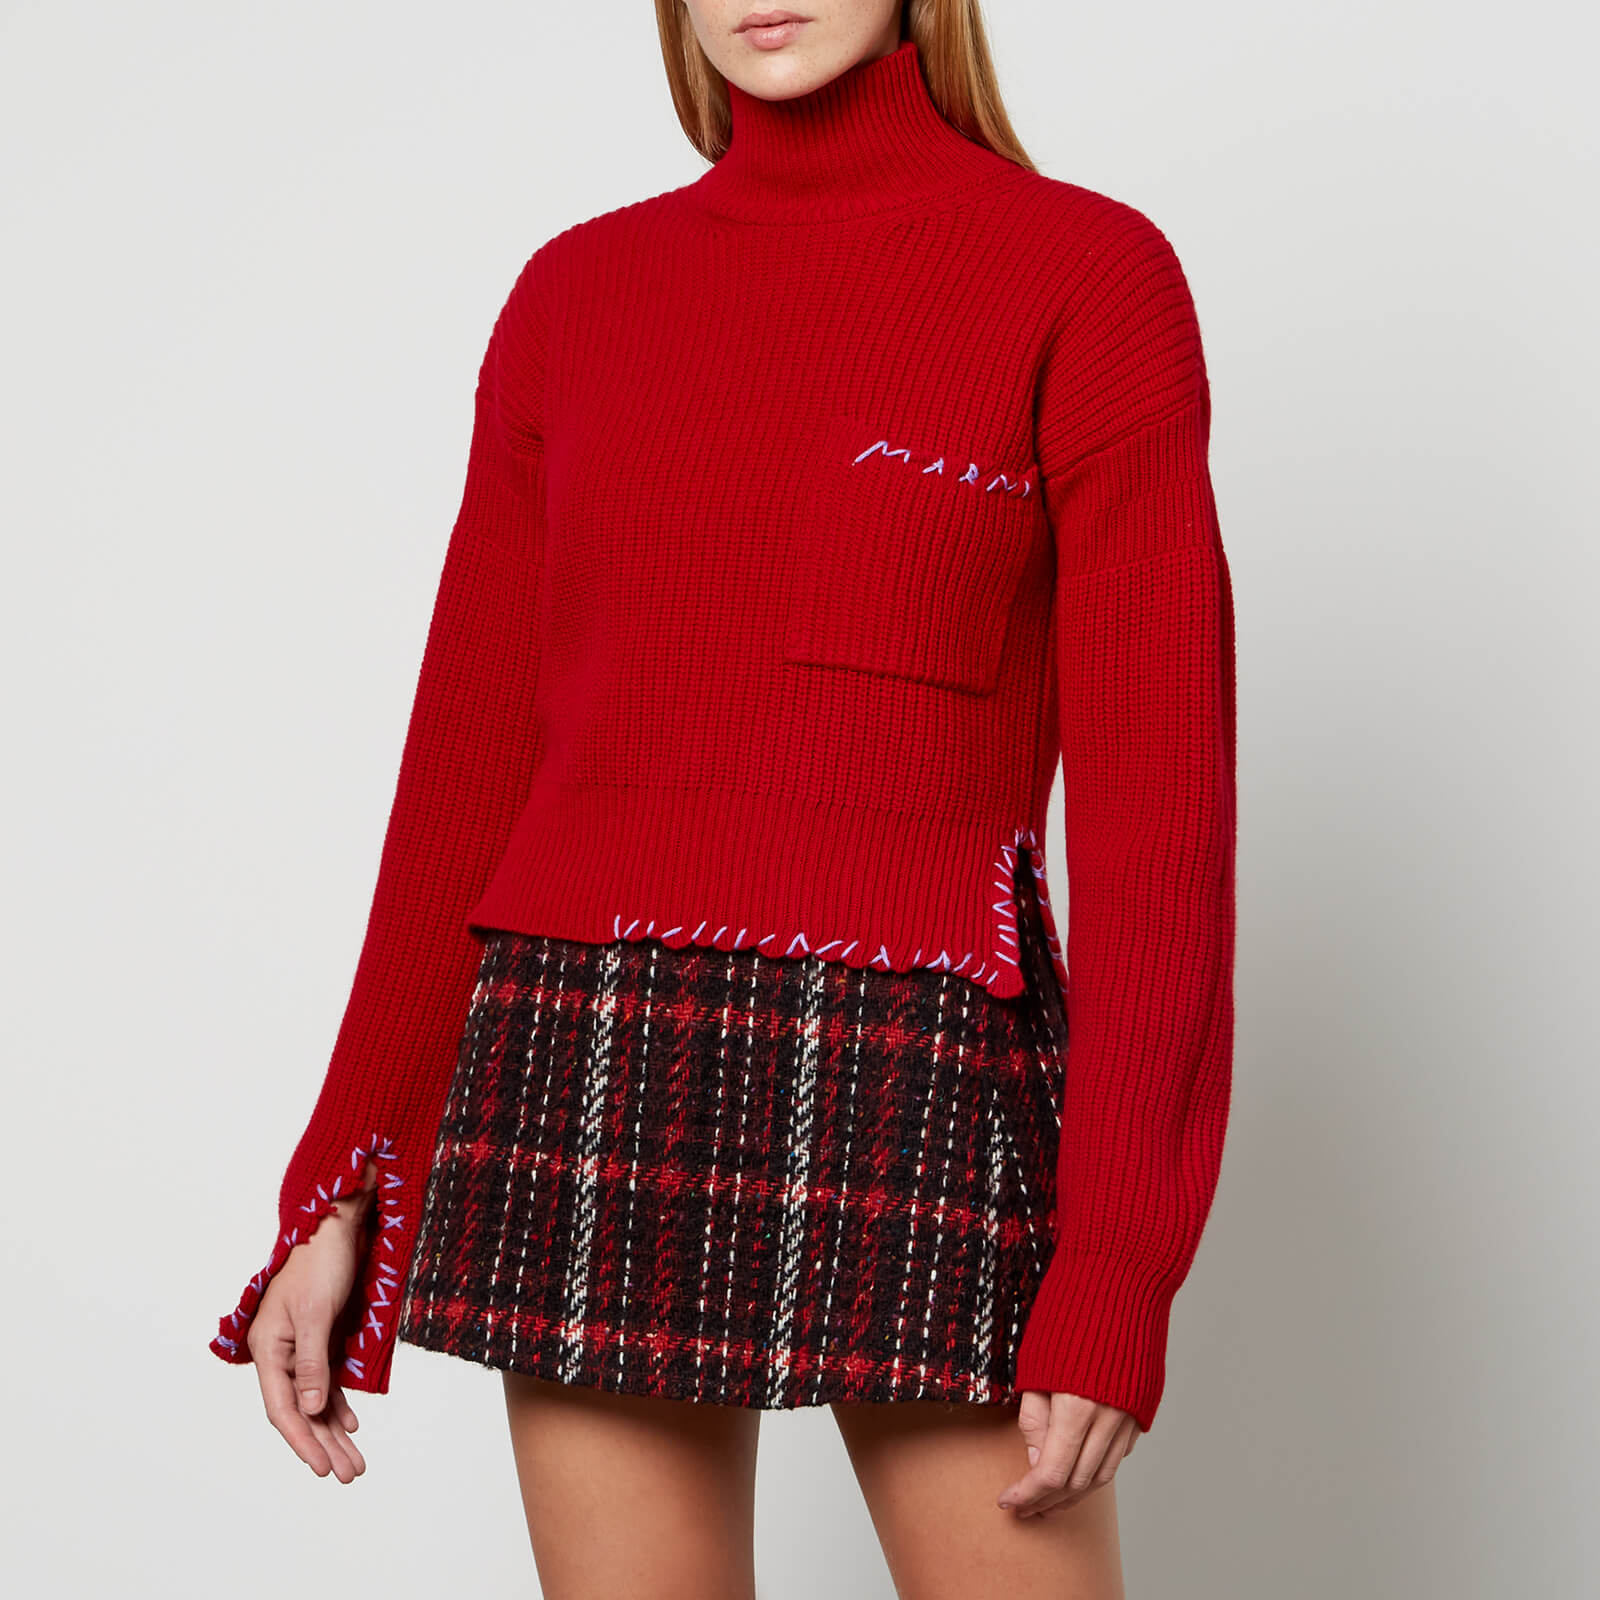 Marni Women's Stitched Logo Turtleneck Sweater - Chili - IT 42/UK 10